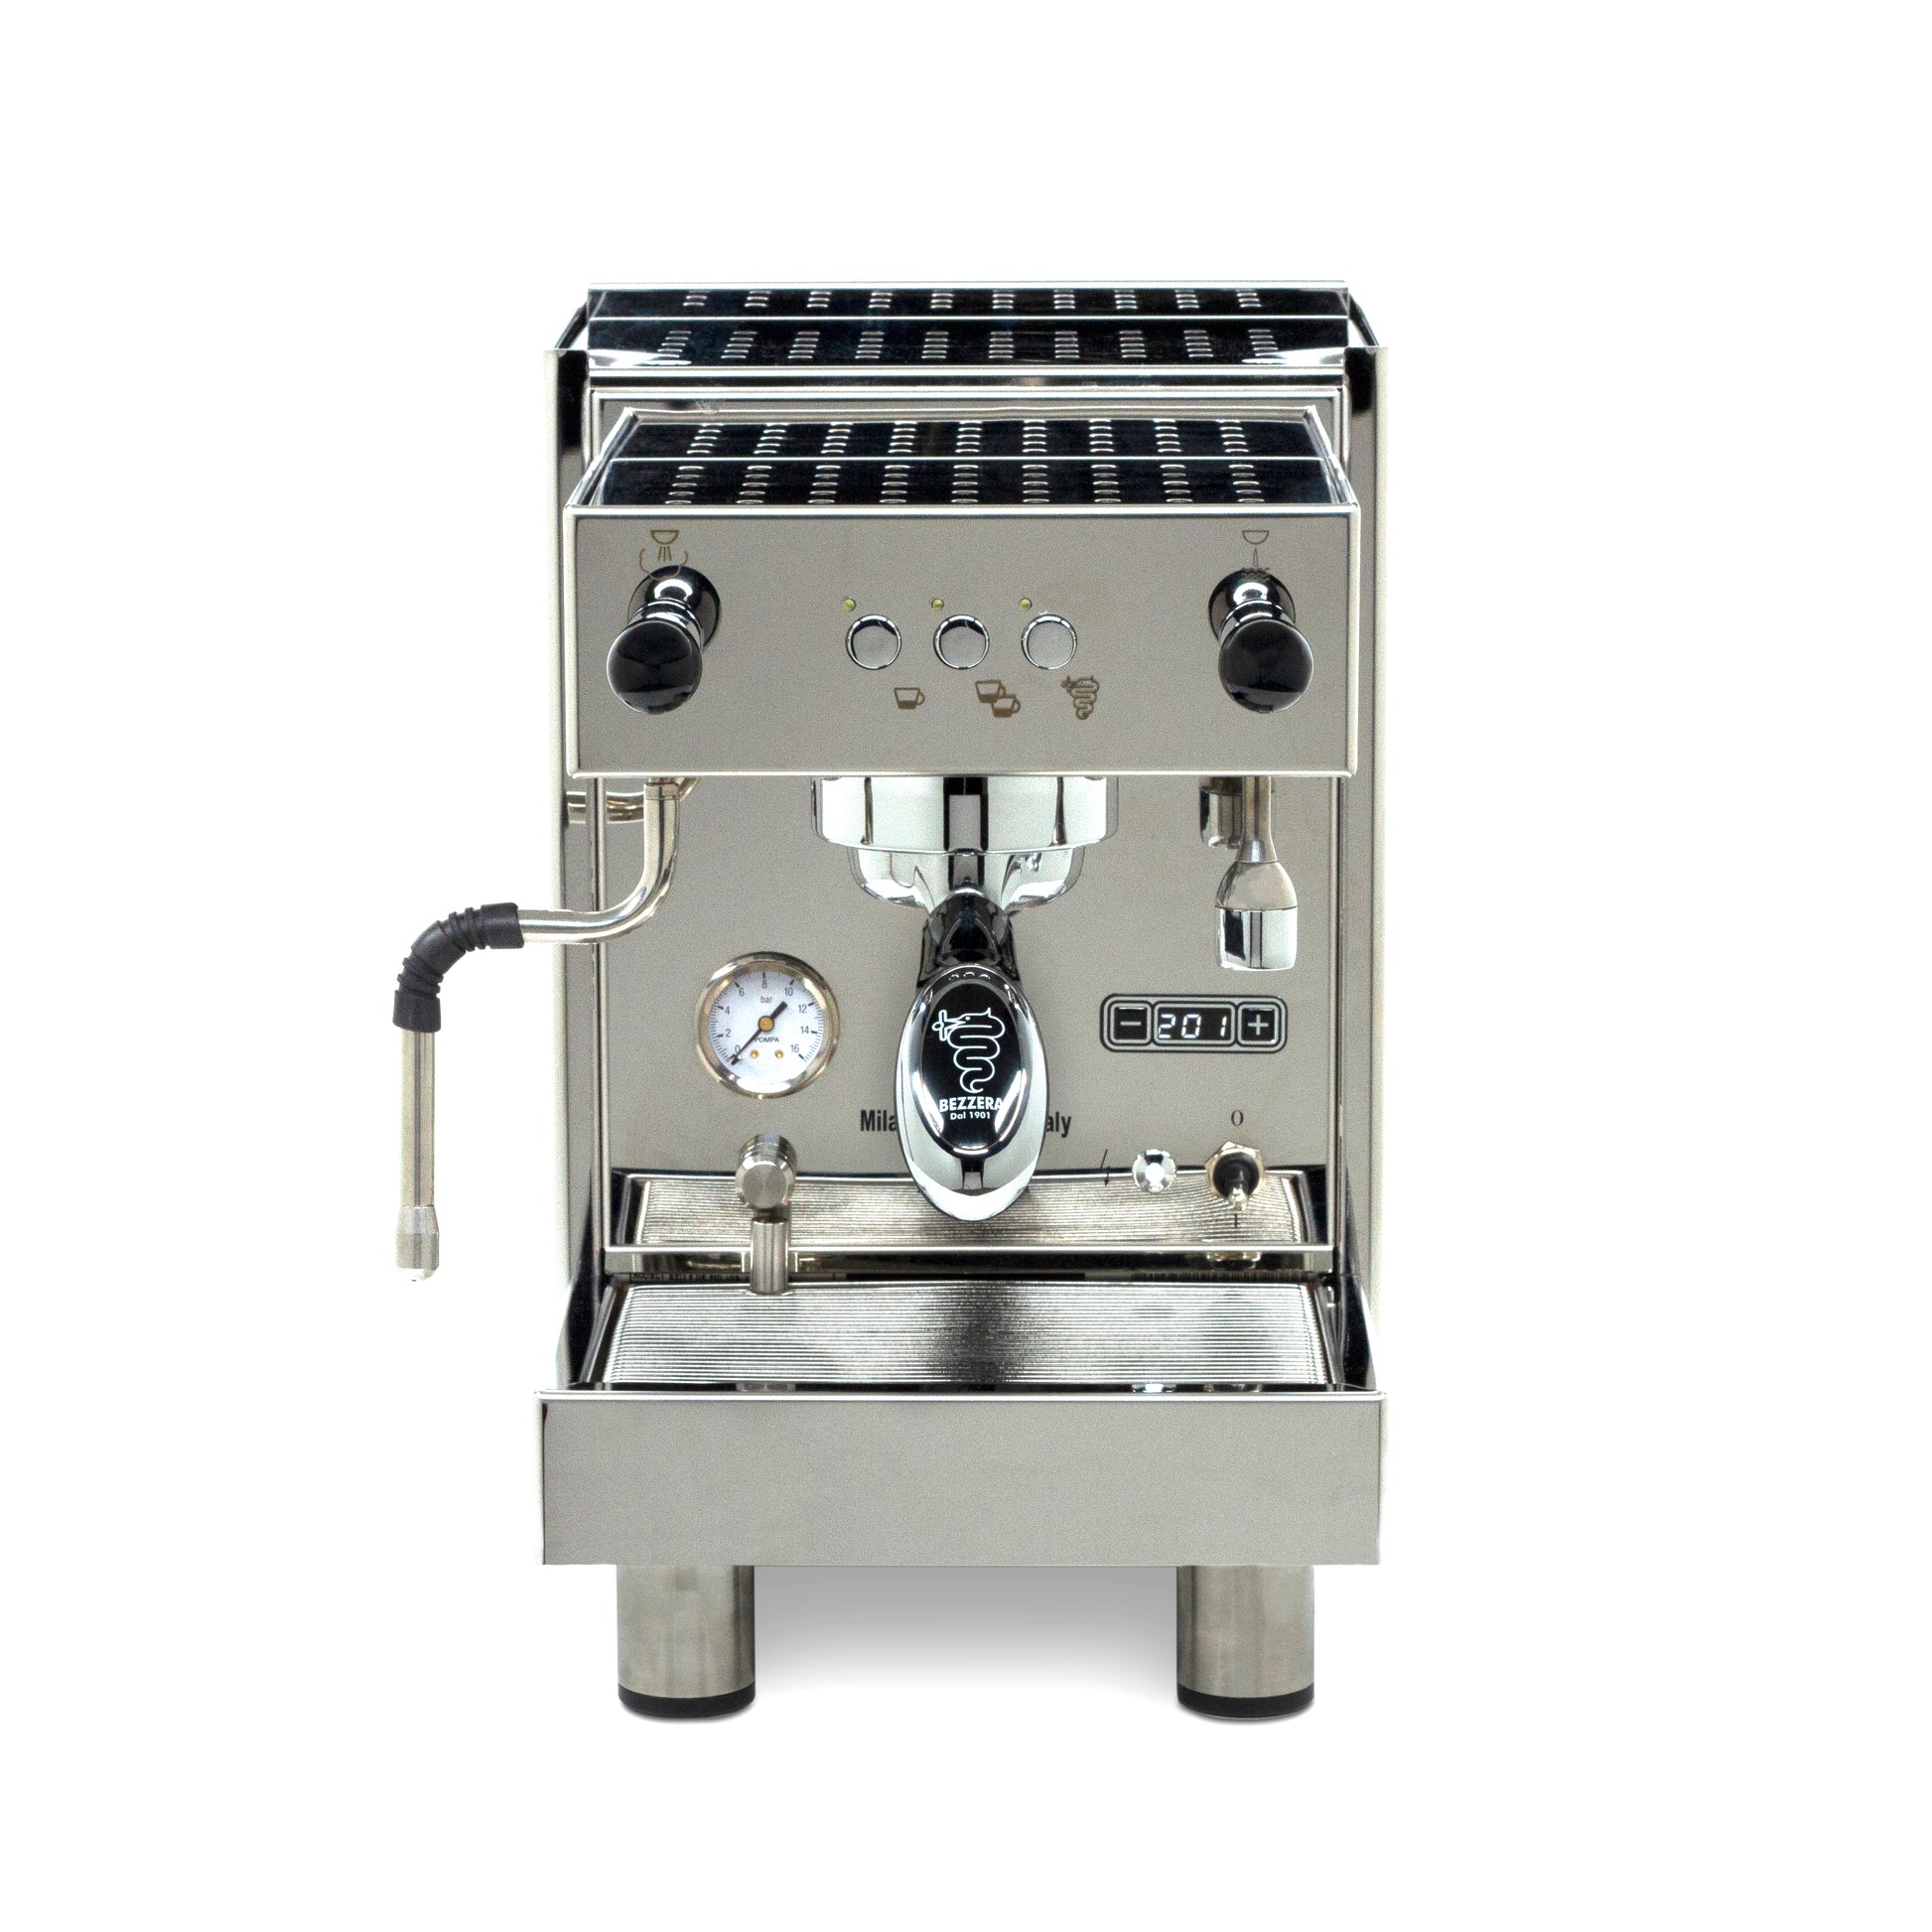 Máquina para hacer Café Duo – Kitchen Center